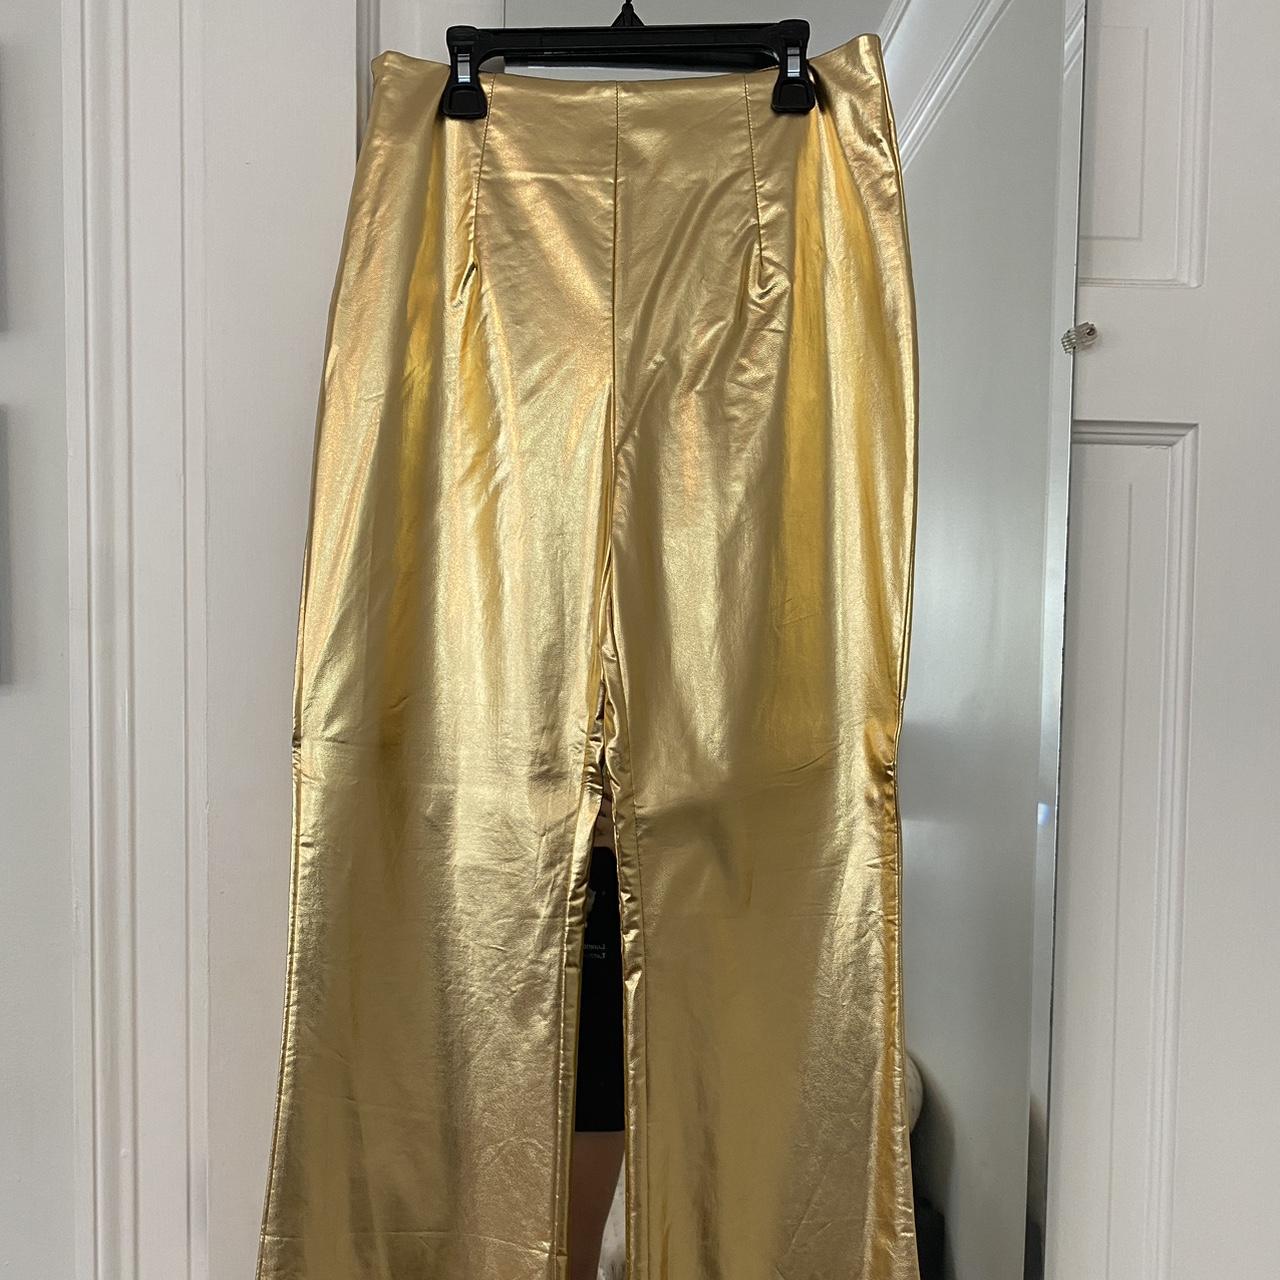 Hosbjerg Women's Gold Trousers